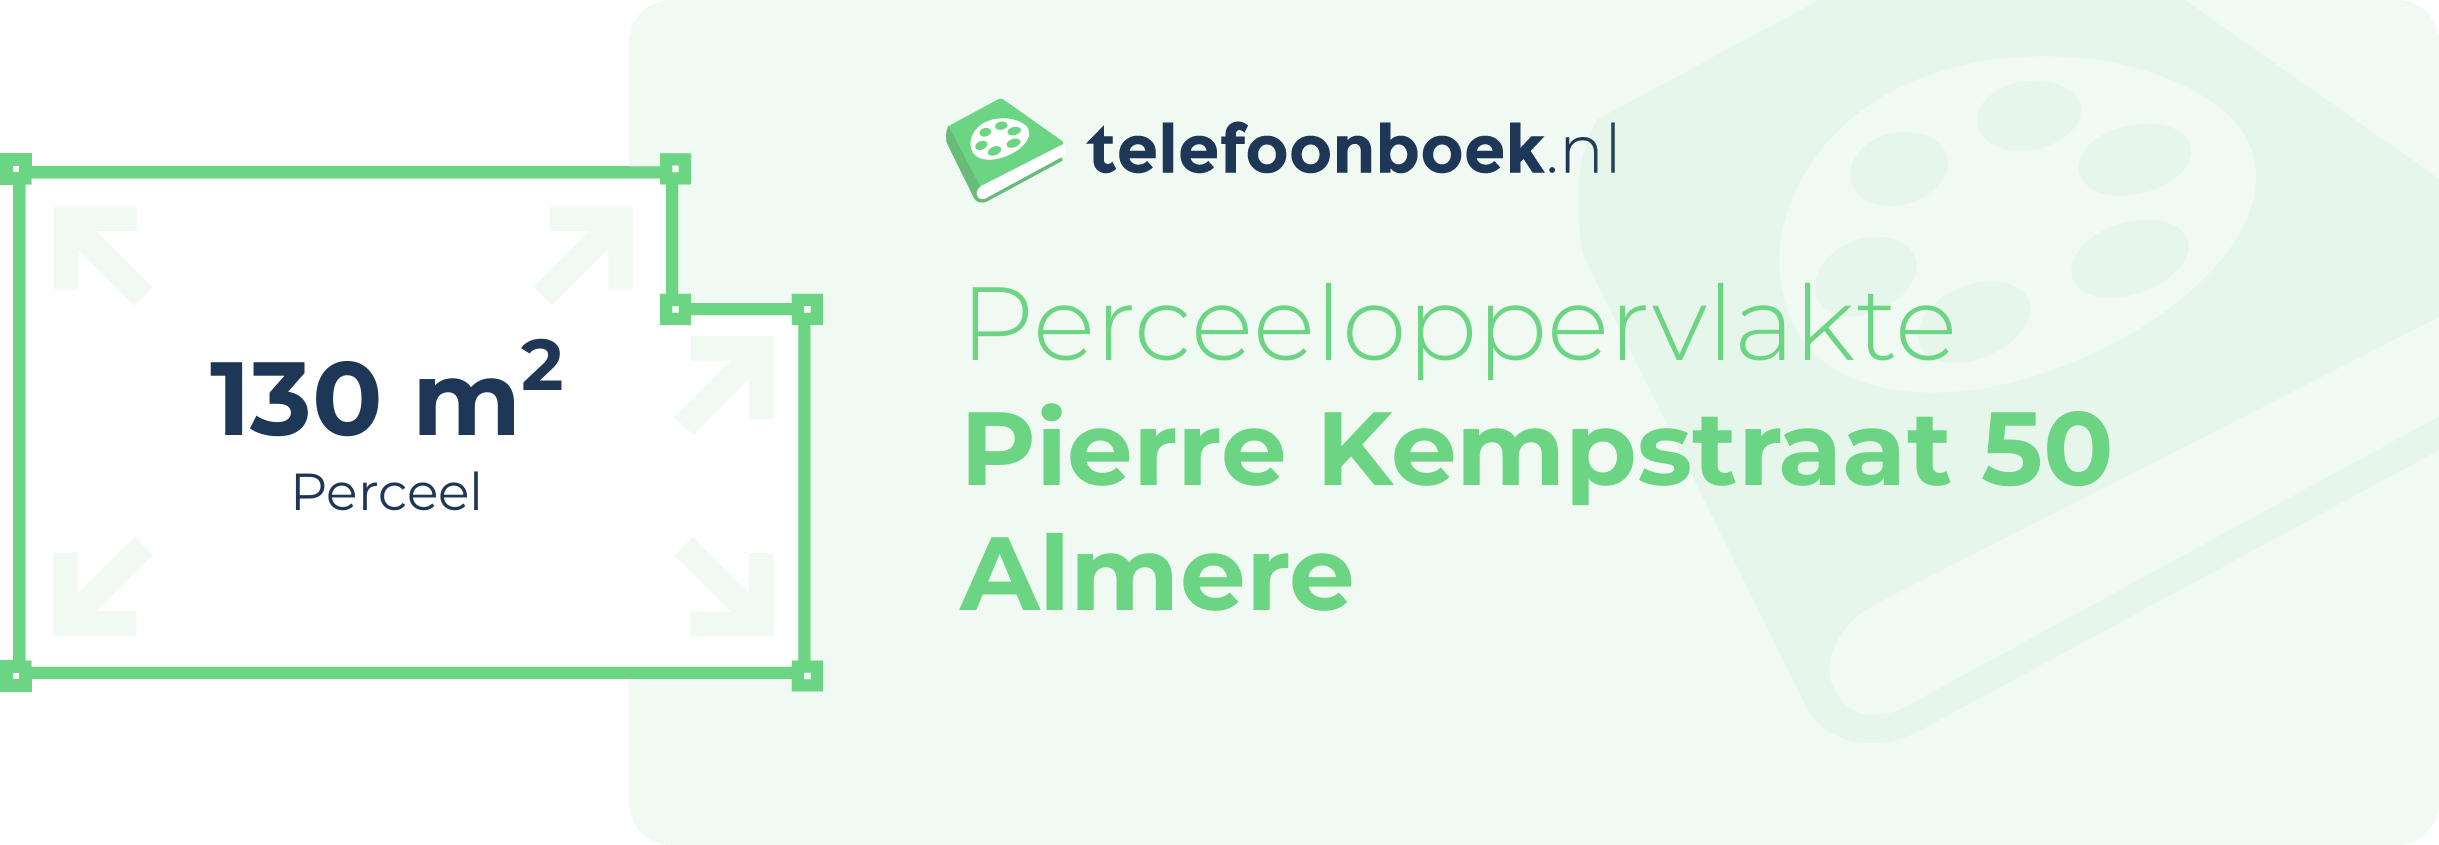 Perceeloppervlakte Pierre Kempstraat 50 Almere